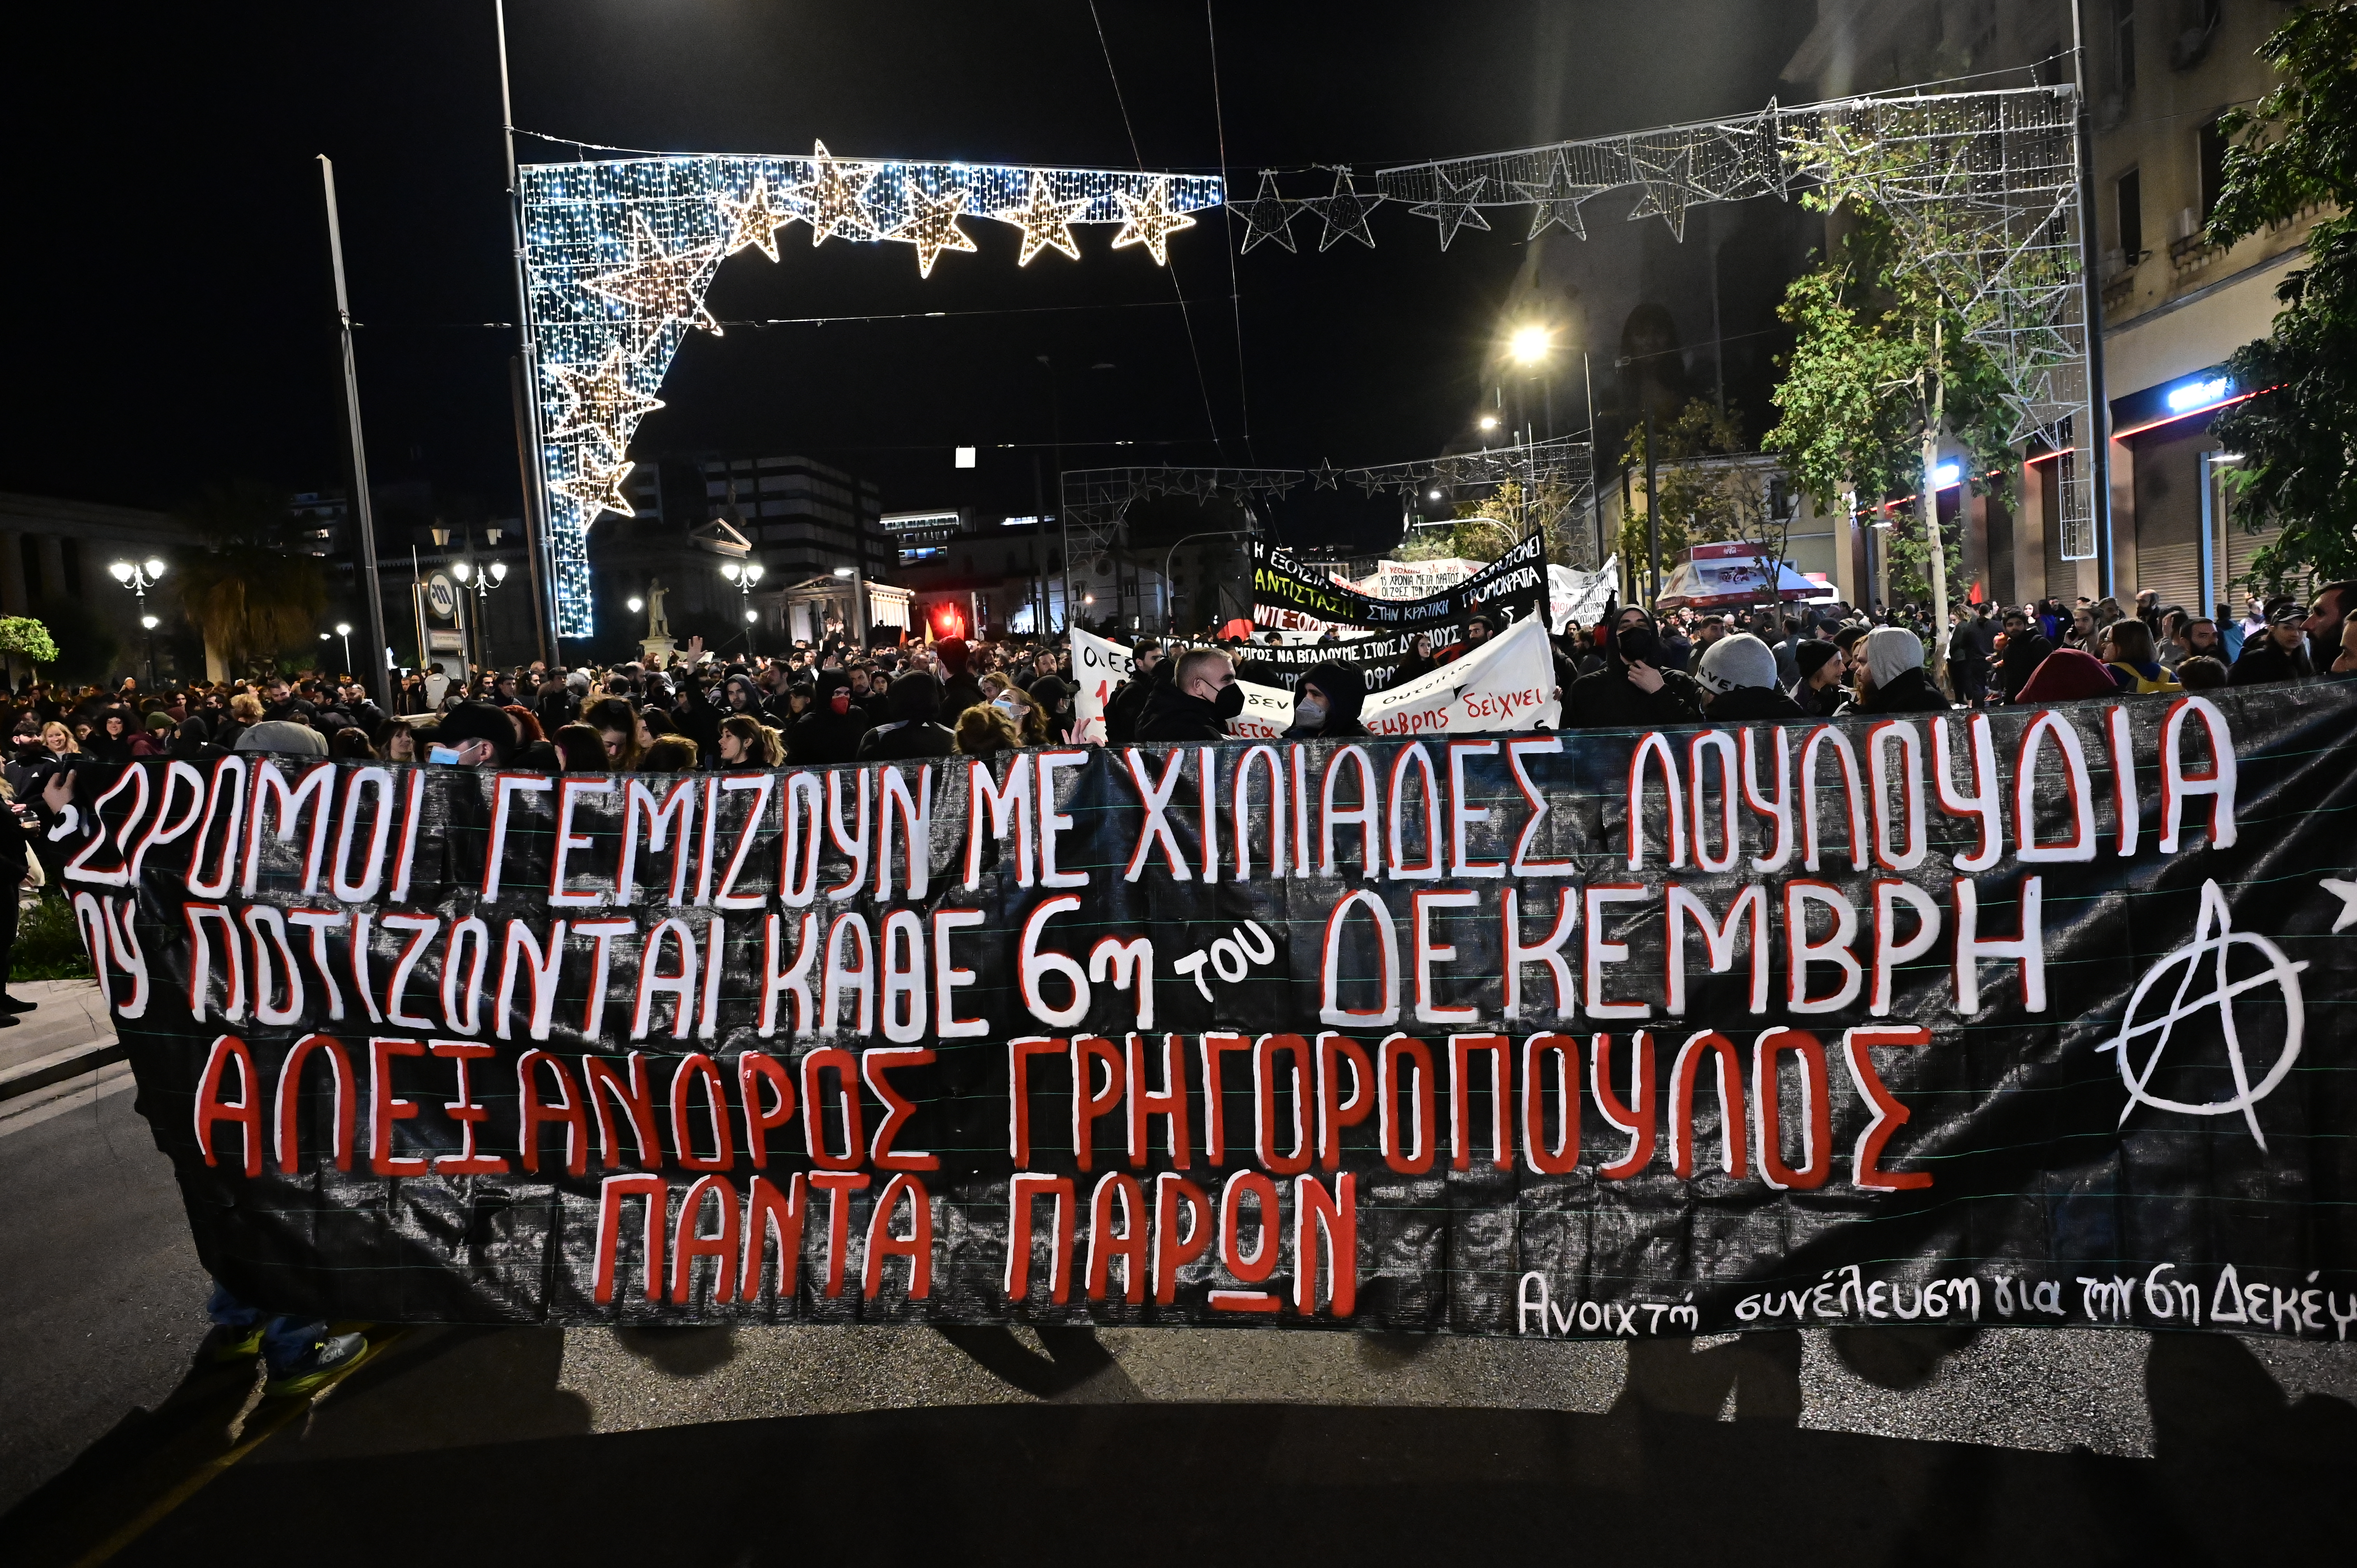 Πορεία μνήμης για Αλέξανδρο Γρηγορόπουλο: Πλήθος κόσμου στις πορείες – Ακολούθησαν σοβαρά επεισόδια στο κέντρο (pics)